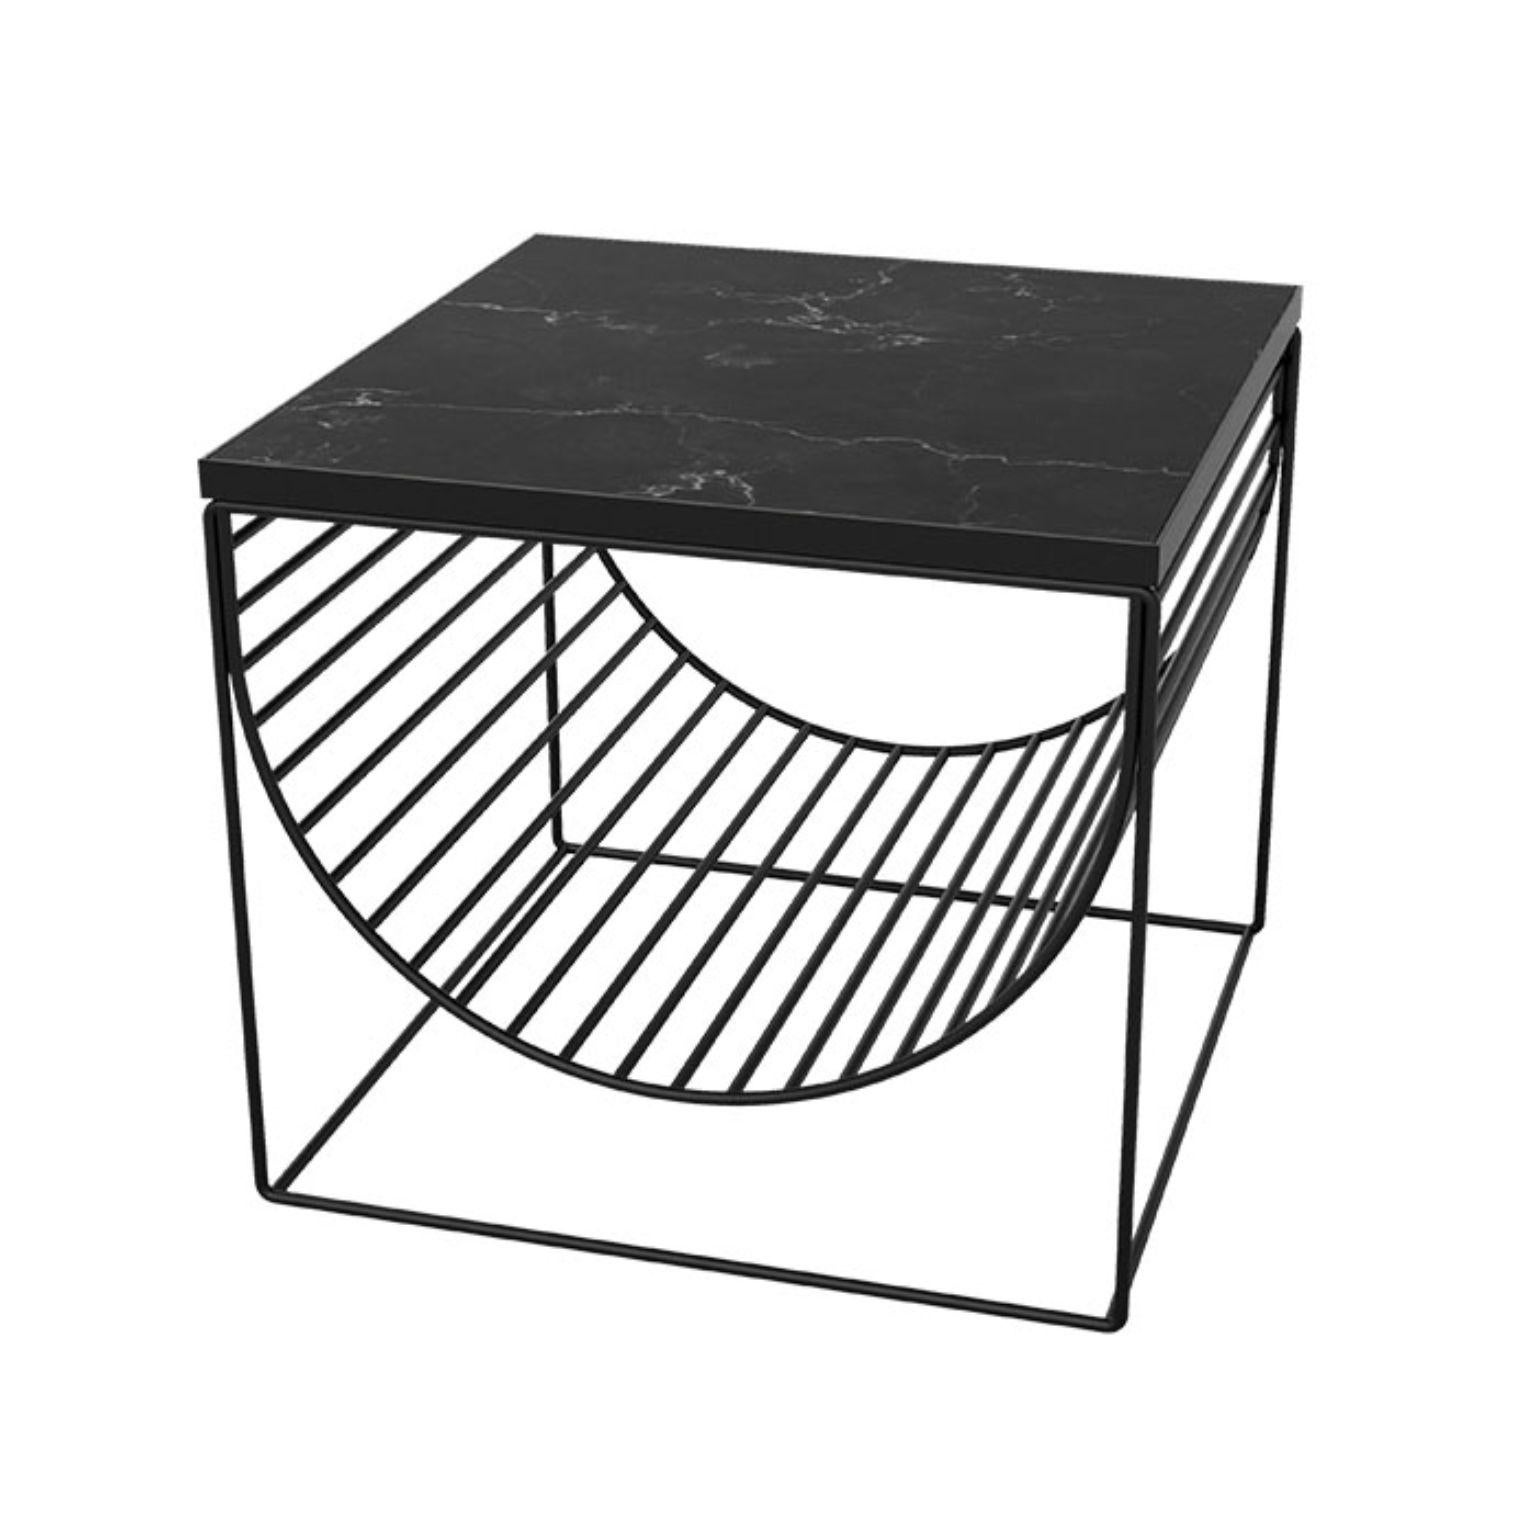 Table d'appoint en marbre noir et acier
Dimensions : L 50 x L 50 x H 44.3 cm
MATERIAL : Marbre, acier  

Cette série se compose de trois designs différents que vous pouvez combiner de multiples façons. Les plateaux de table sont disponibles en